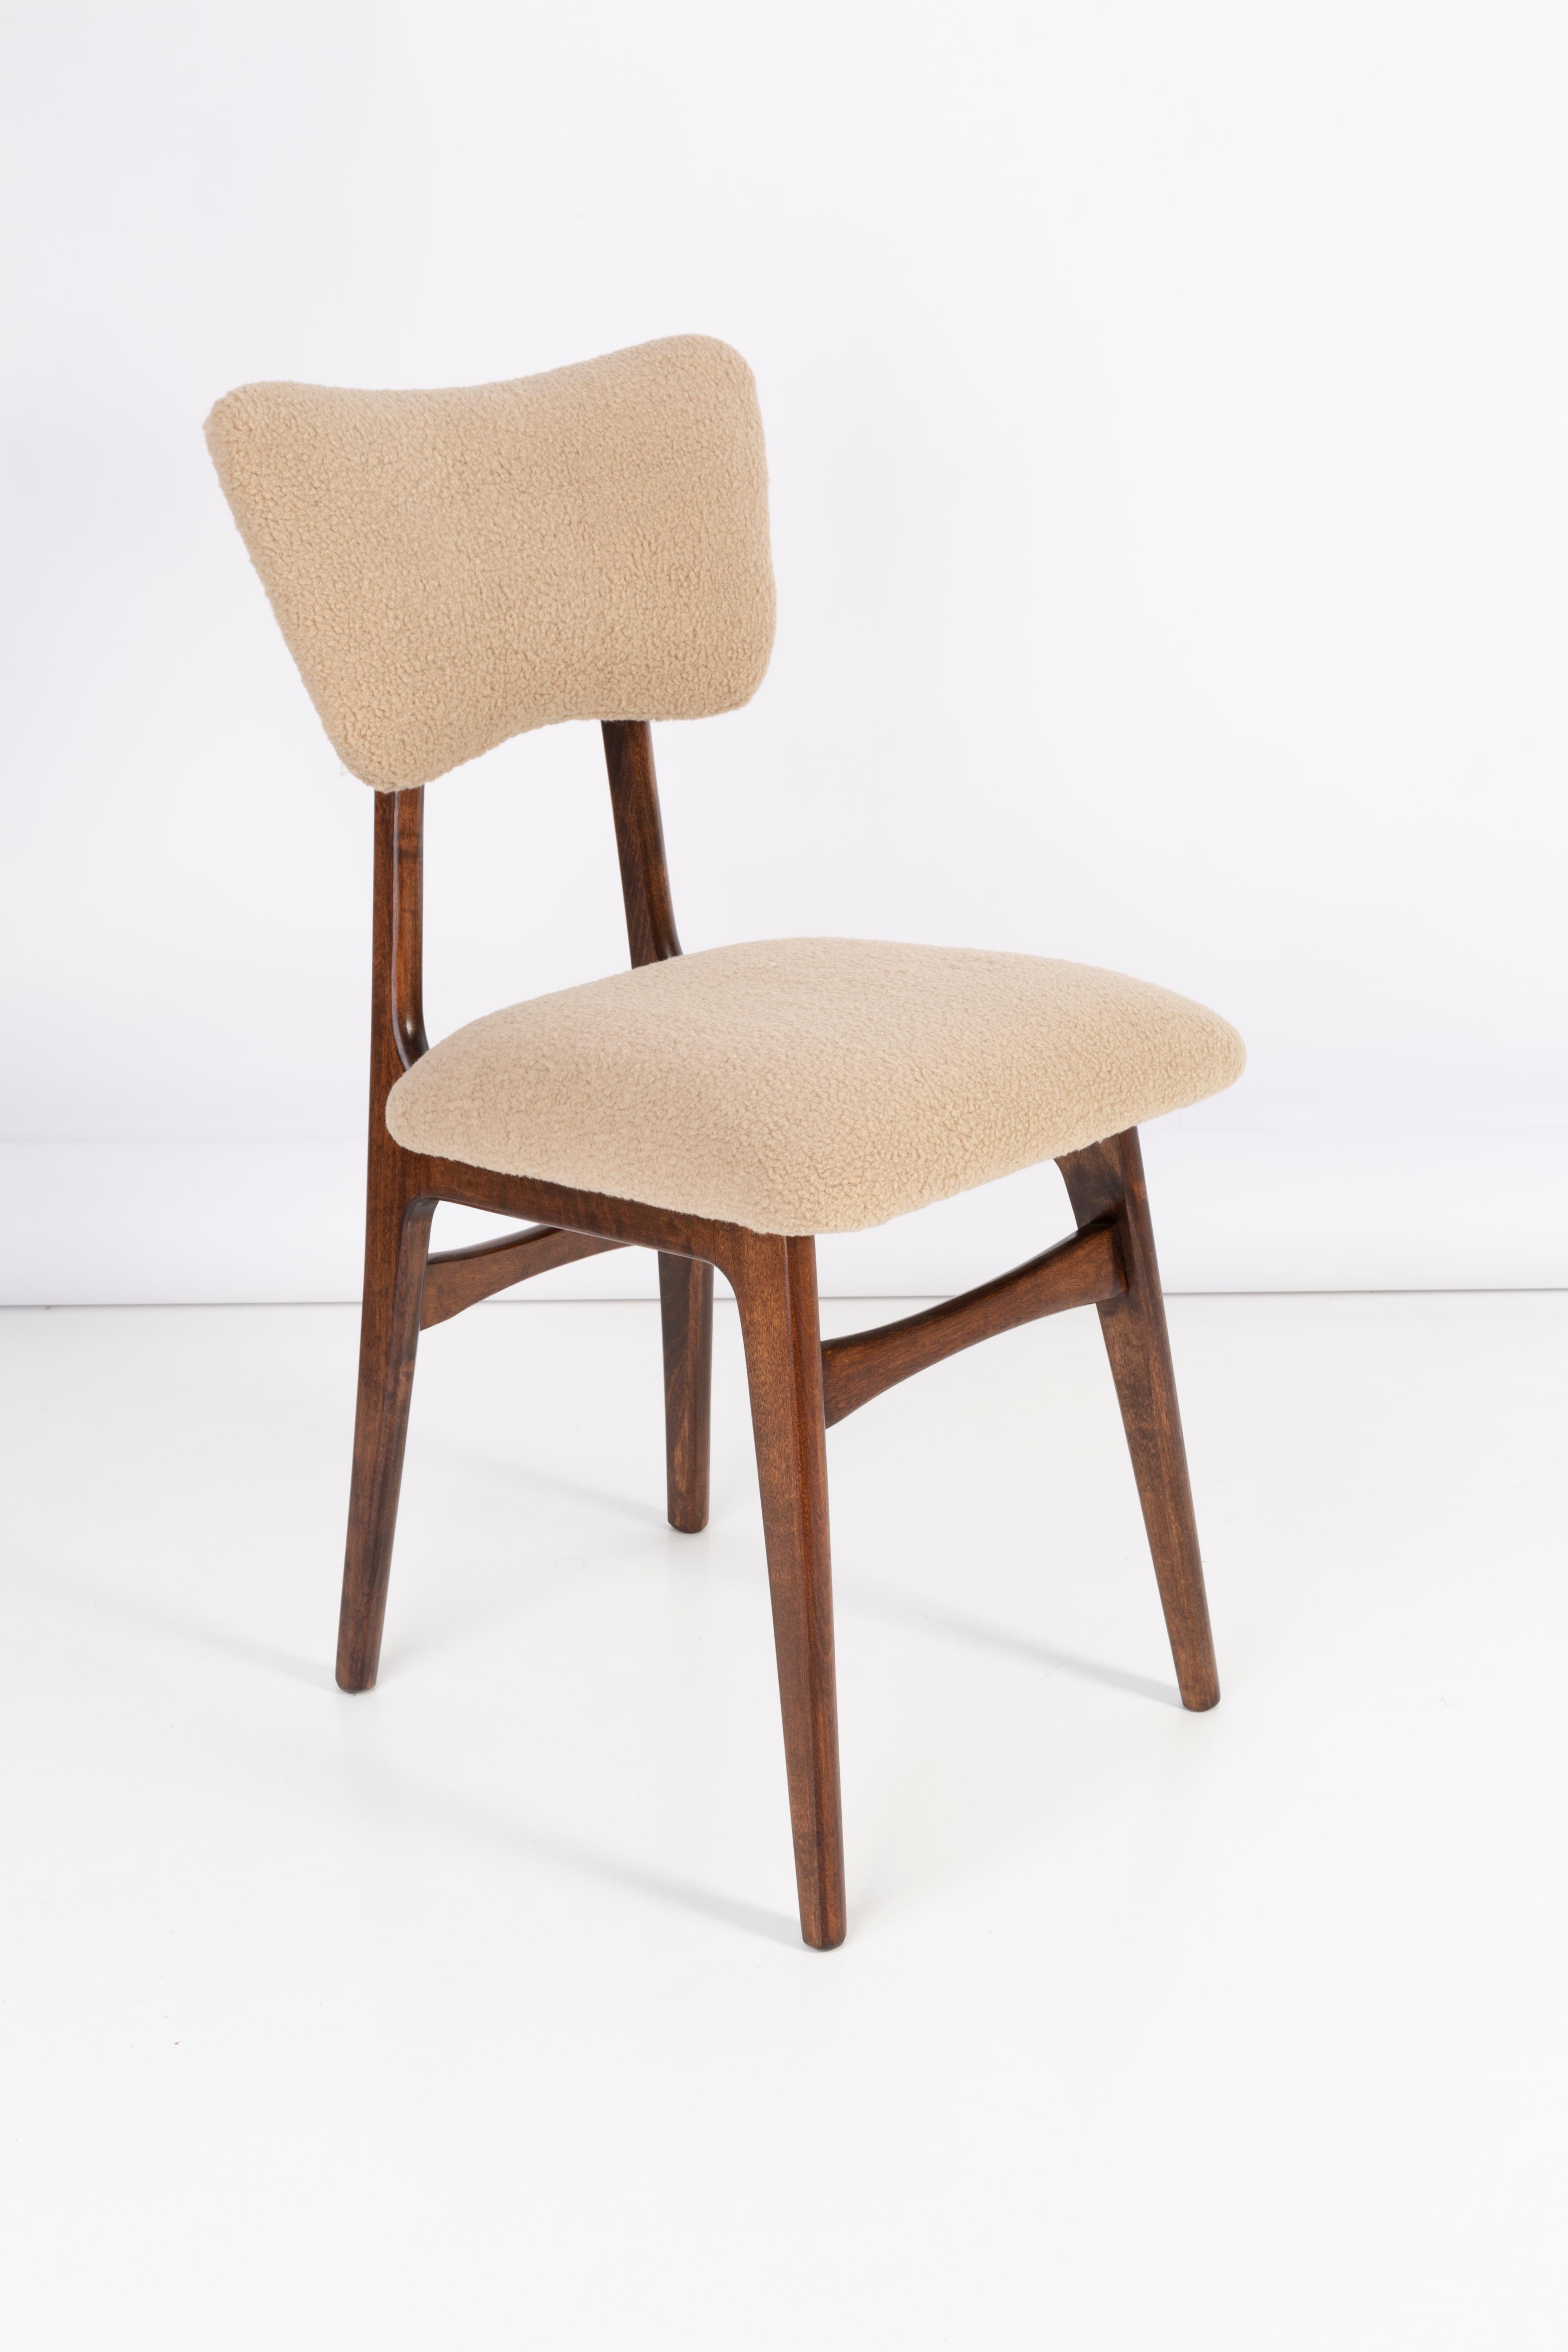 Chaises conçues par le professeur Rajmund Halas. Fabriqué en bois de hêtre. Les chaises ont fait l'objet d'une rénovation complète de leur revêtement et les boiseries ont été rafraîchies. L'assise et le dossier sont habillés d'un tissu bouclé camel,